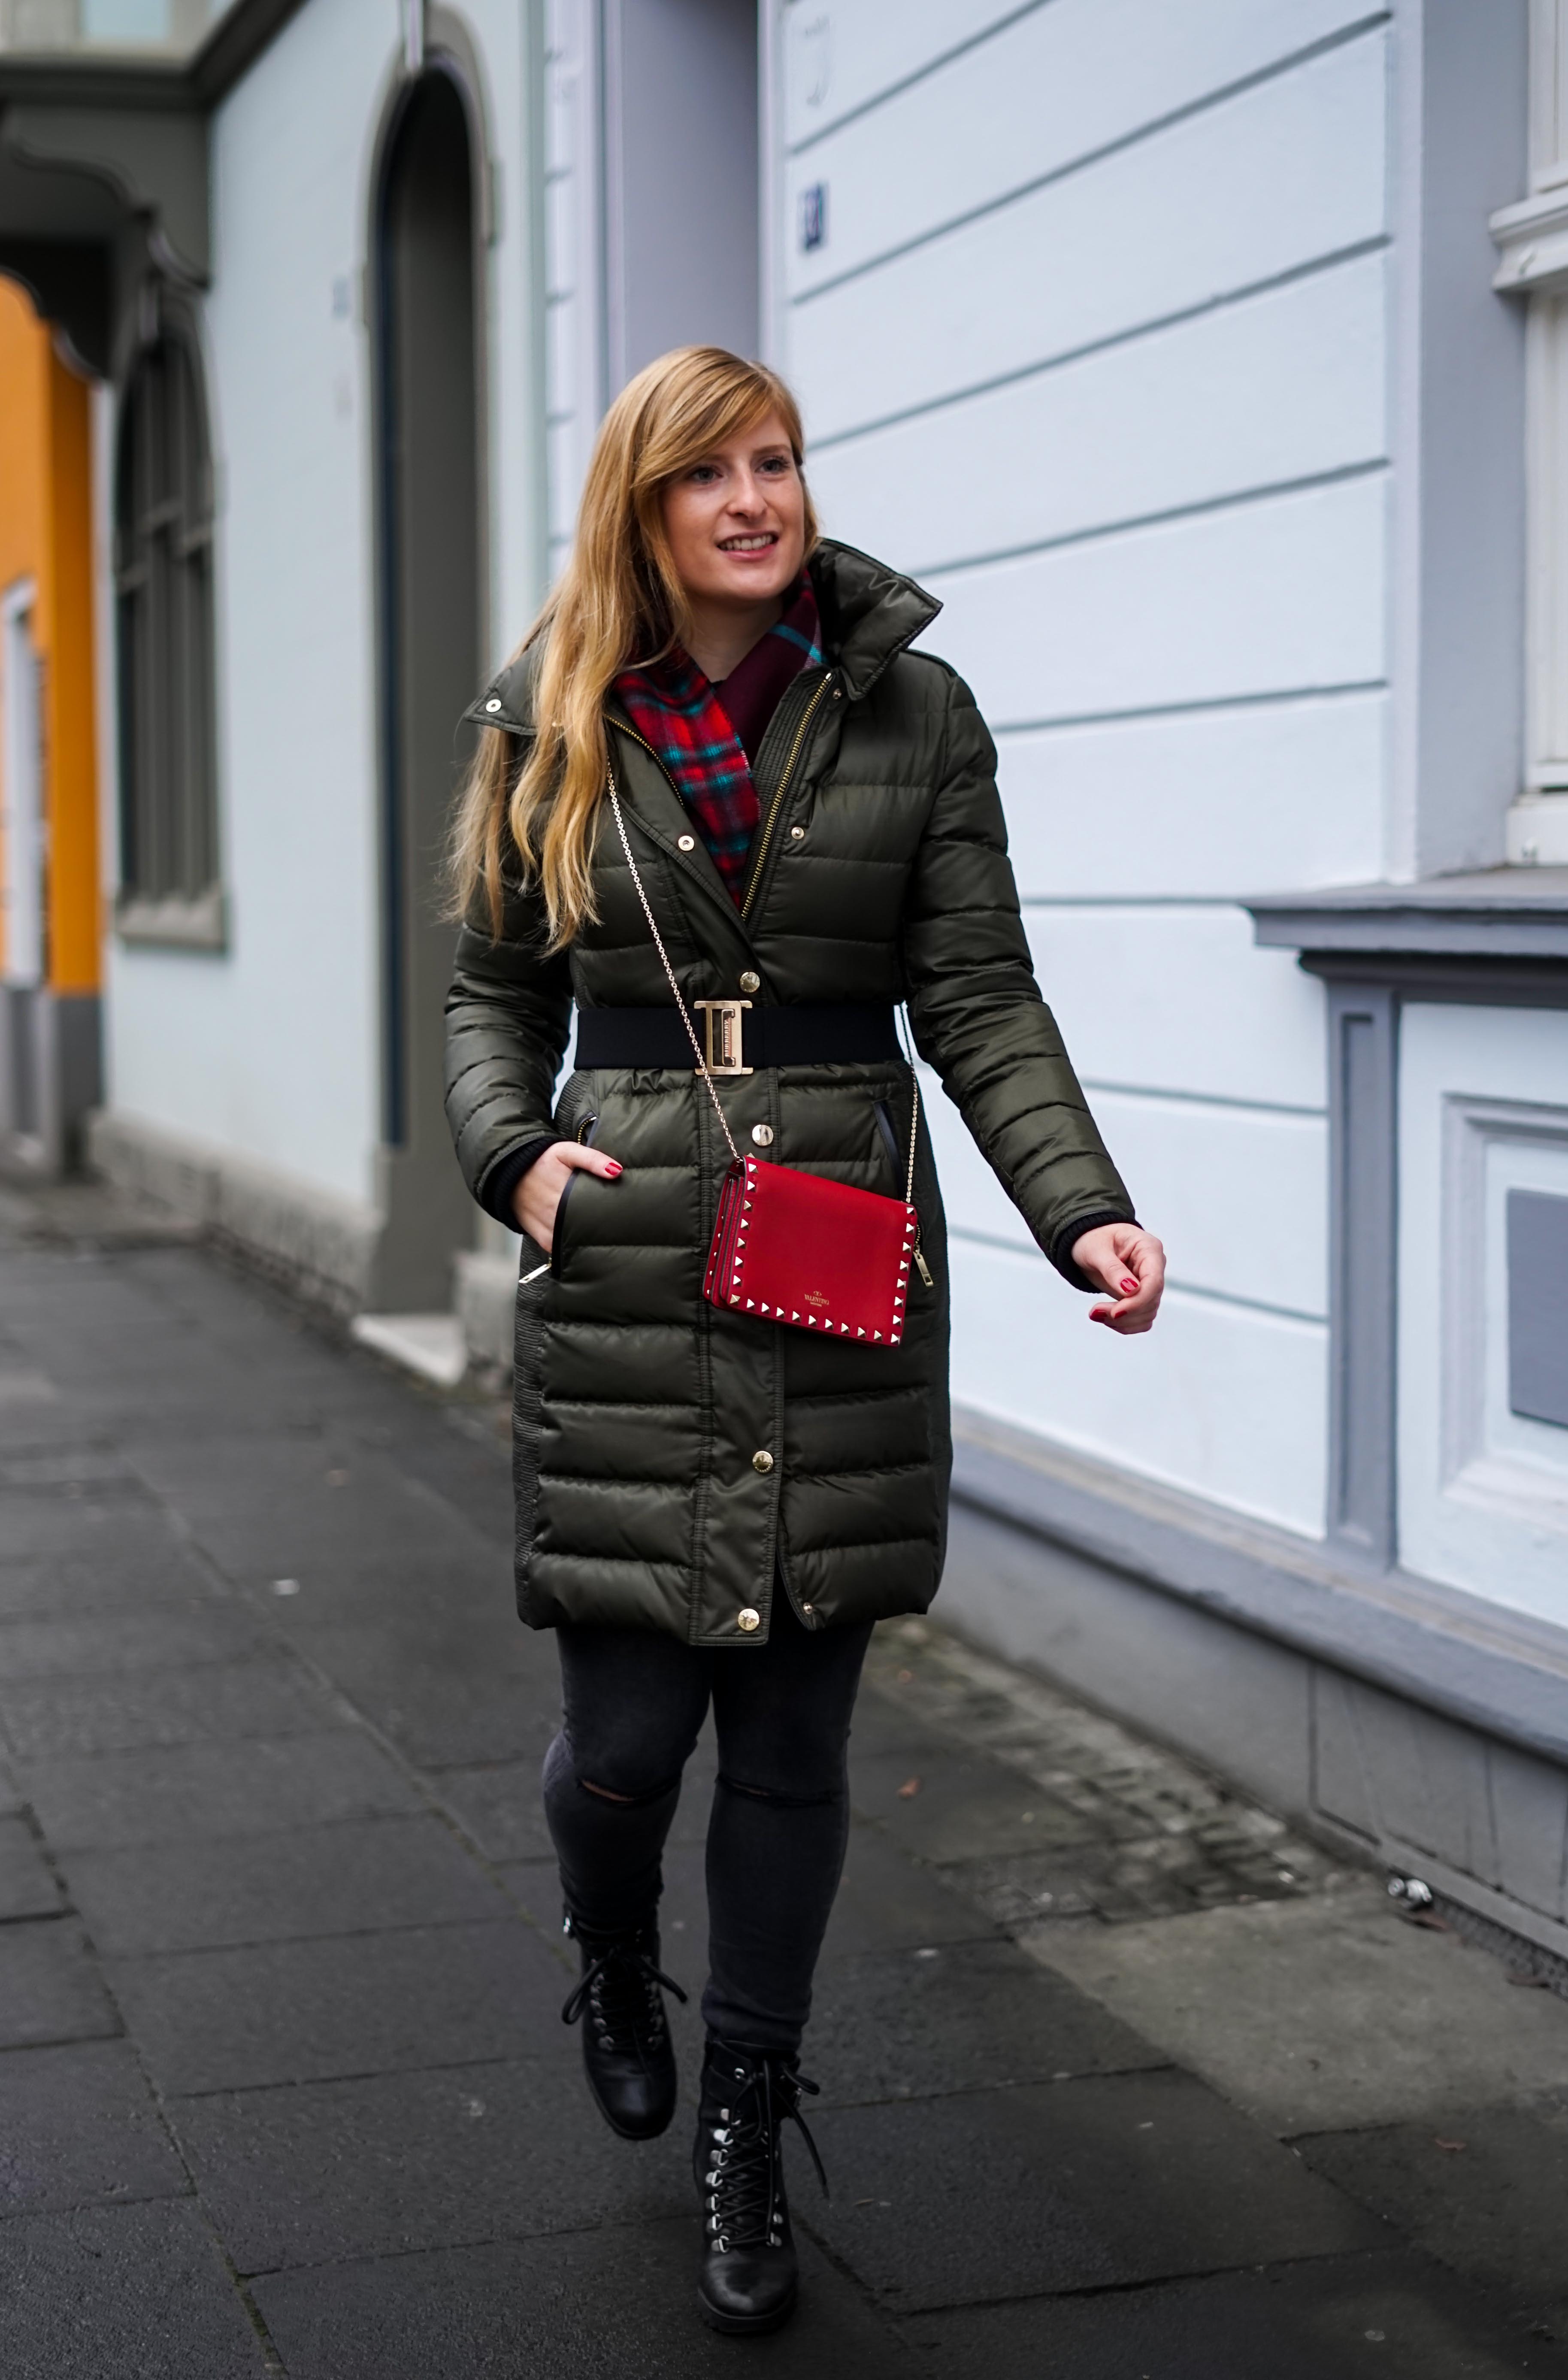 Burberry Winterjacke Grün Modeblog Winter Outfit Bonn Stiefeletten kombinieren 3